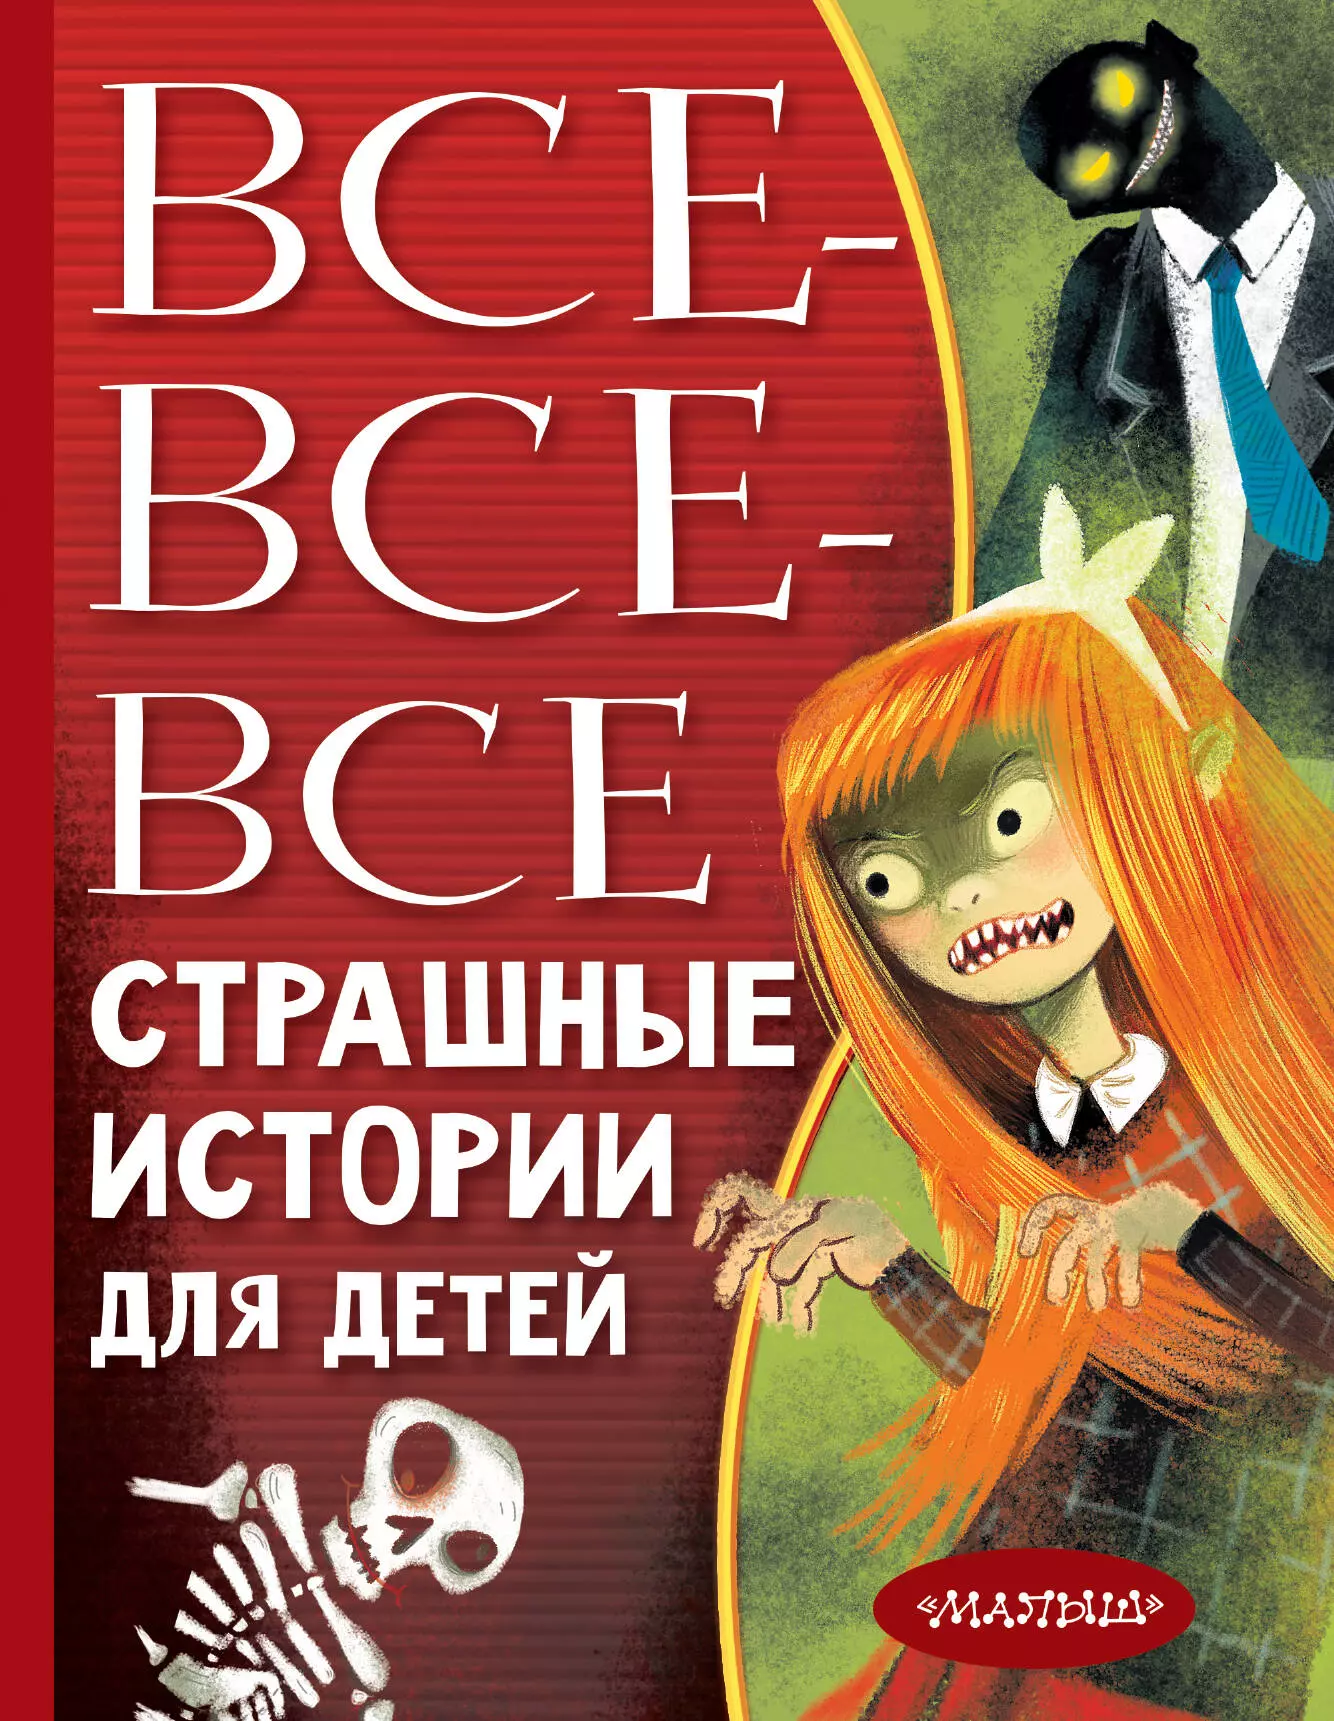 Остер Григорий Бенционович - Все-все-все страшные истории для детей